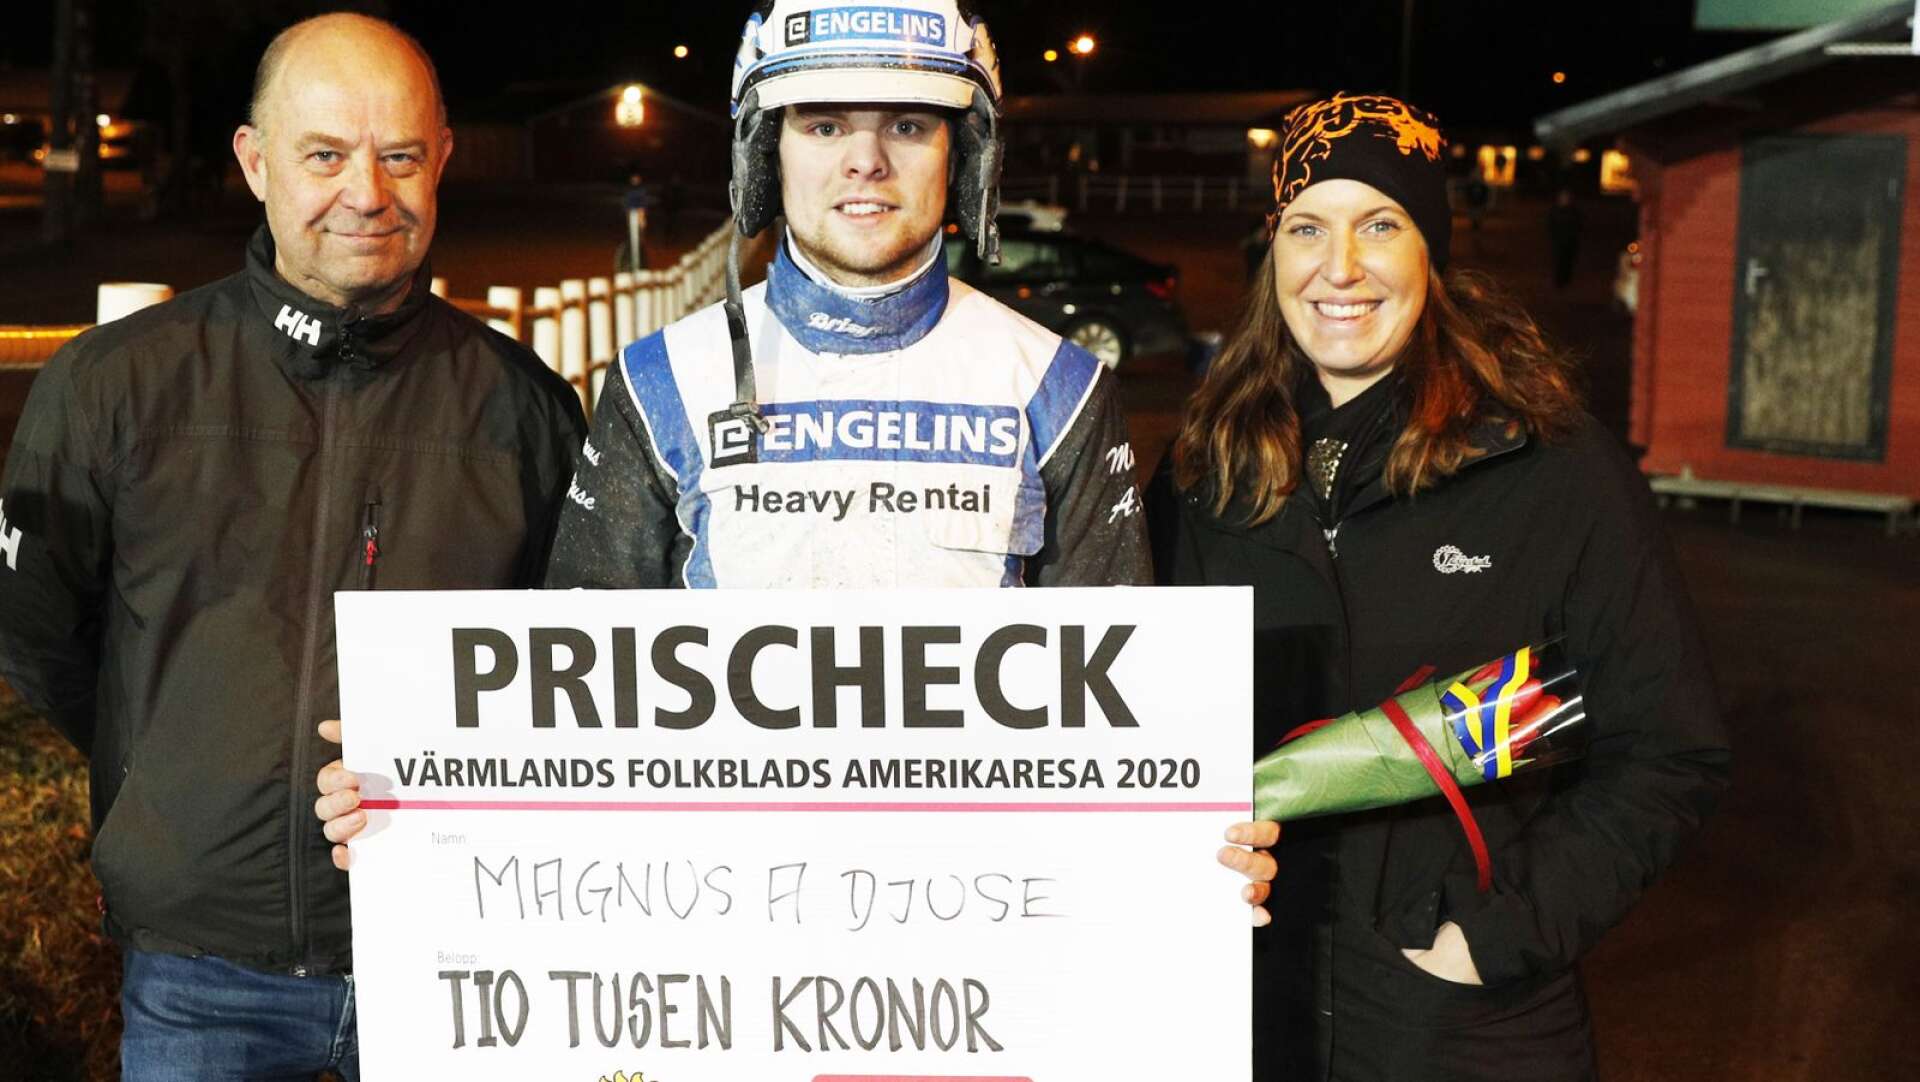 Jättetalangen Magnus A Djuse flankerad av Kenth Pettersson och travbanechef Marie H Svensson blev årets vinnare av Amerikaresan efter att han med minsta möjliga marginal besegrat Per Nilsson.